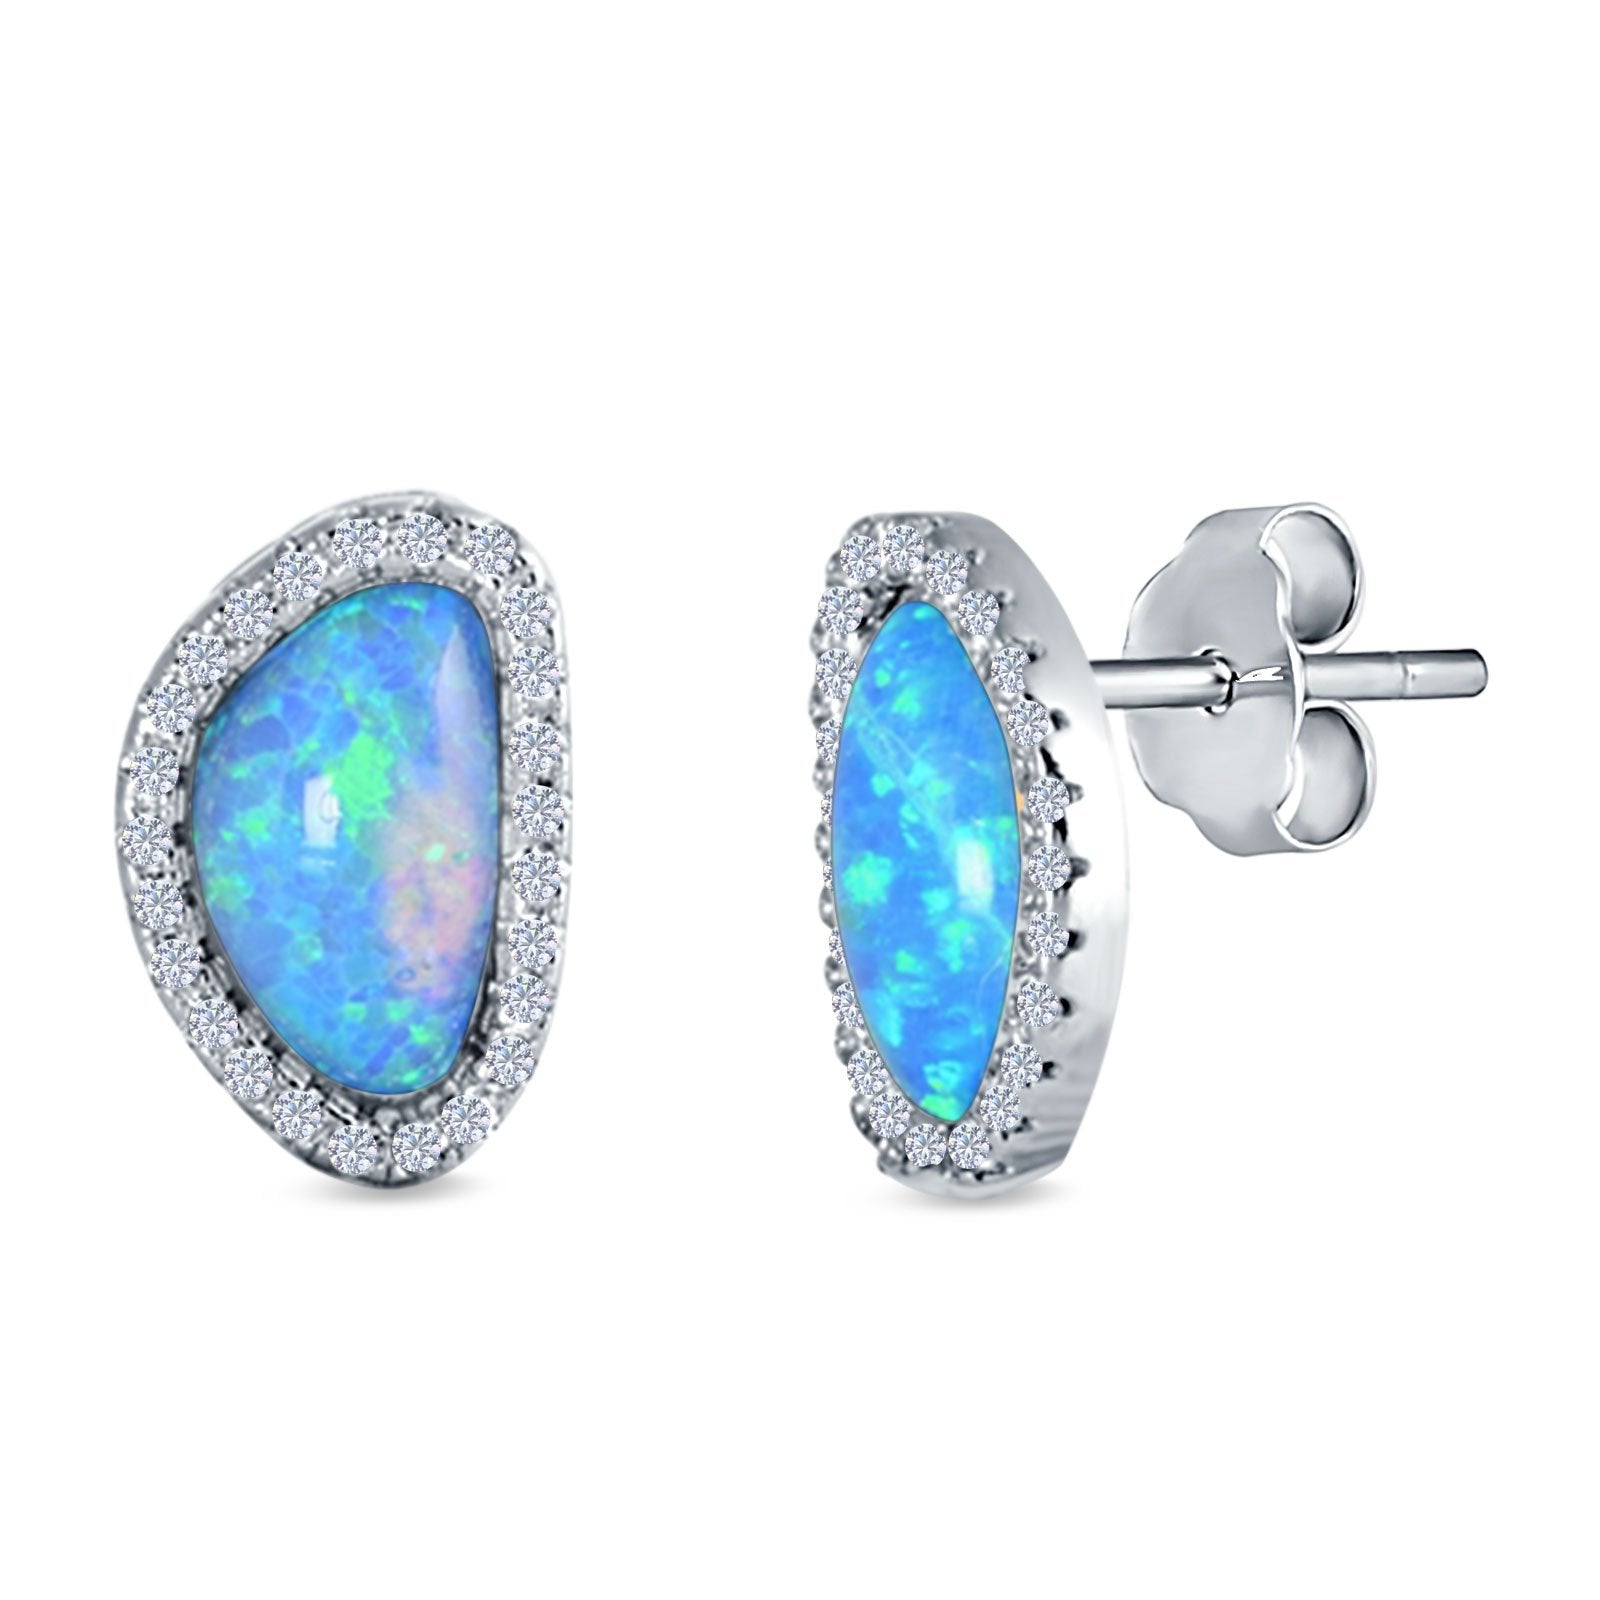 Halo Stud Earrings Created Opal 925 Sterlig Silver(12mm)